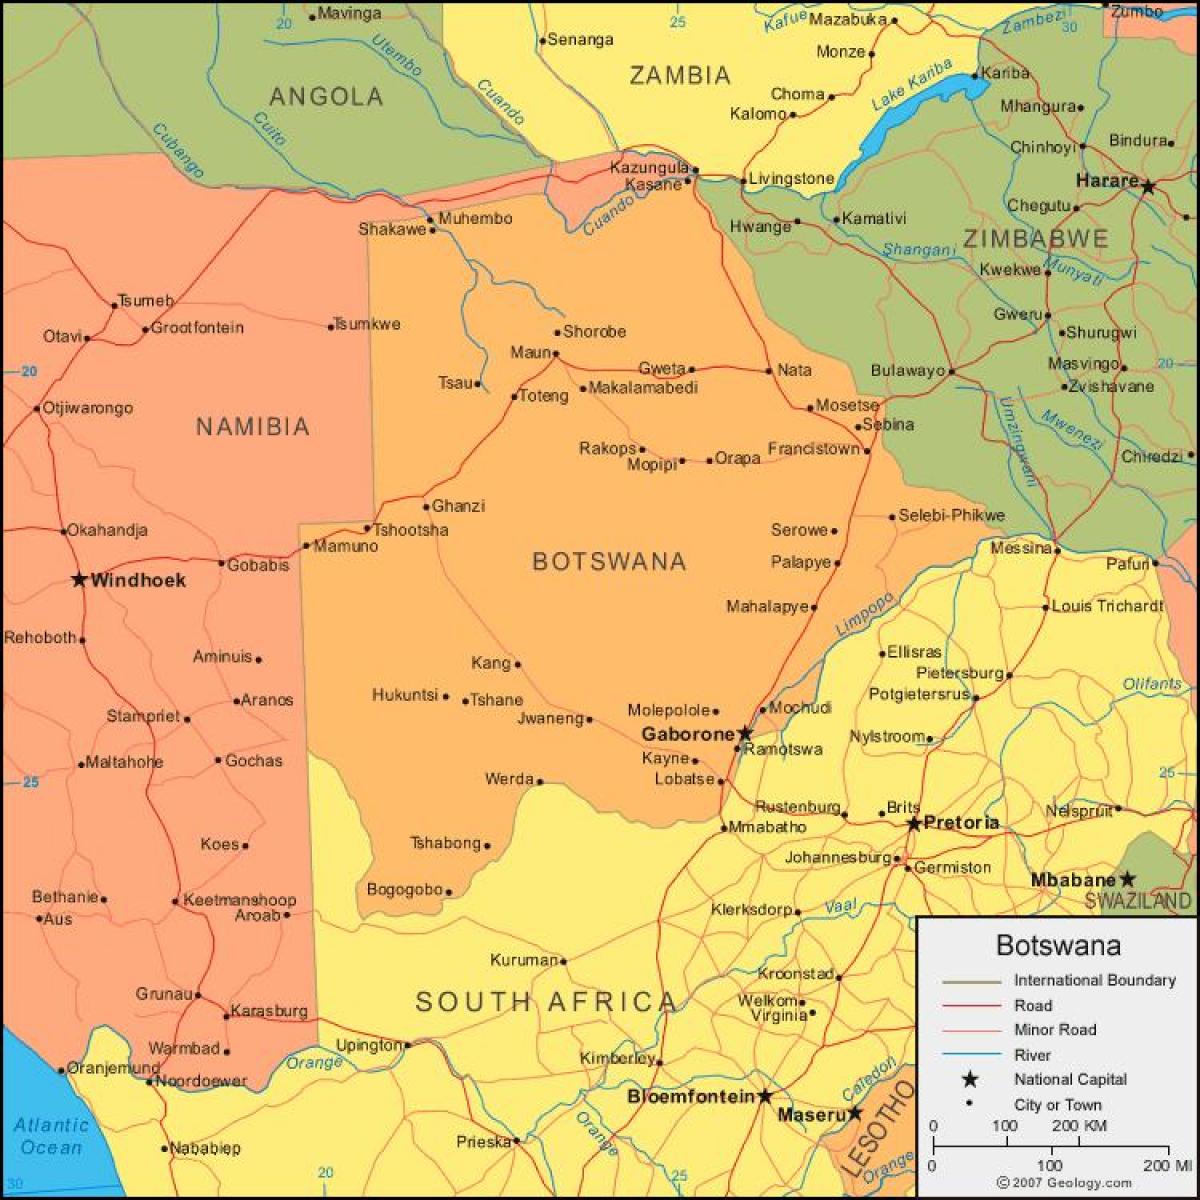 kart over Botswana viser alle landsbyer